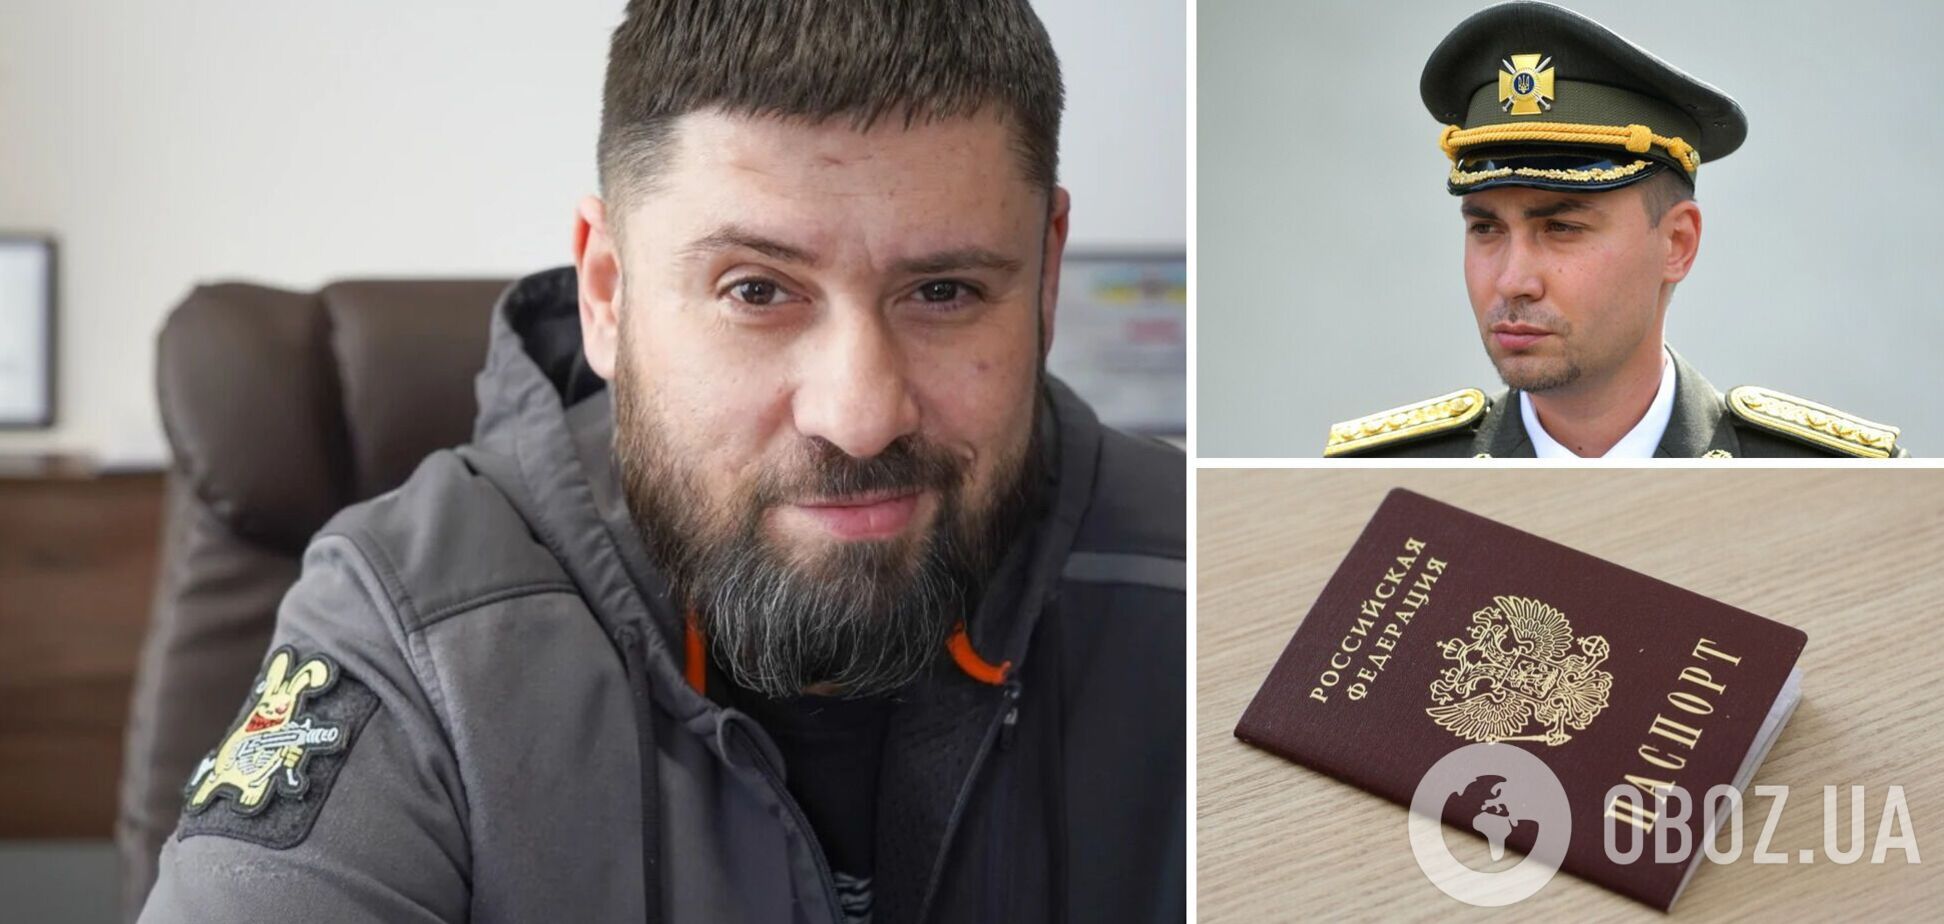 Гражданство РФ и проживание с Будановым: Гогилашвили отреагировал на расследование журналистов